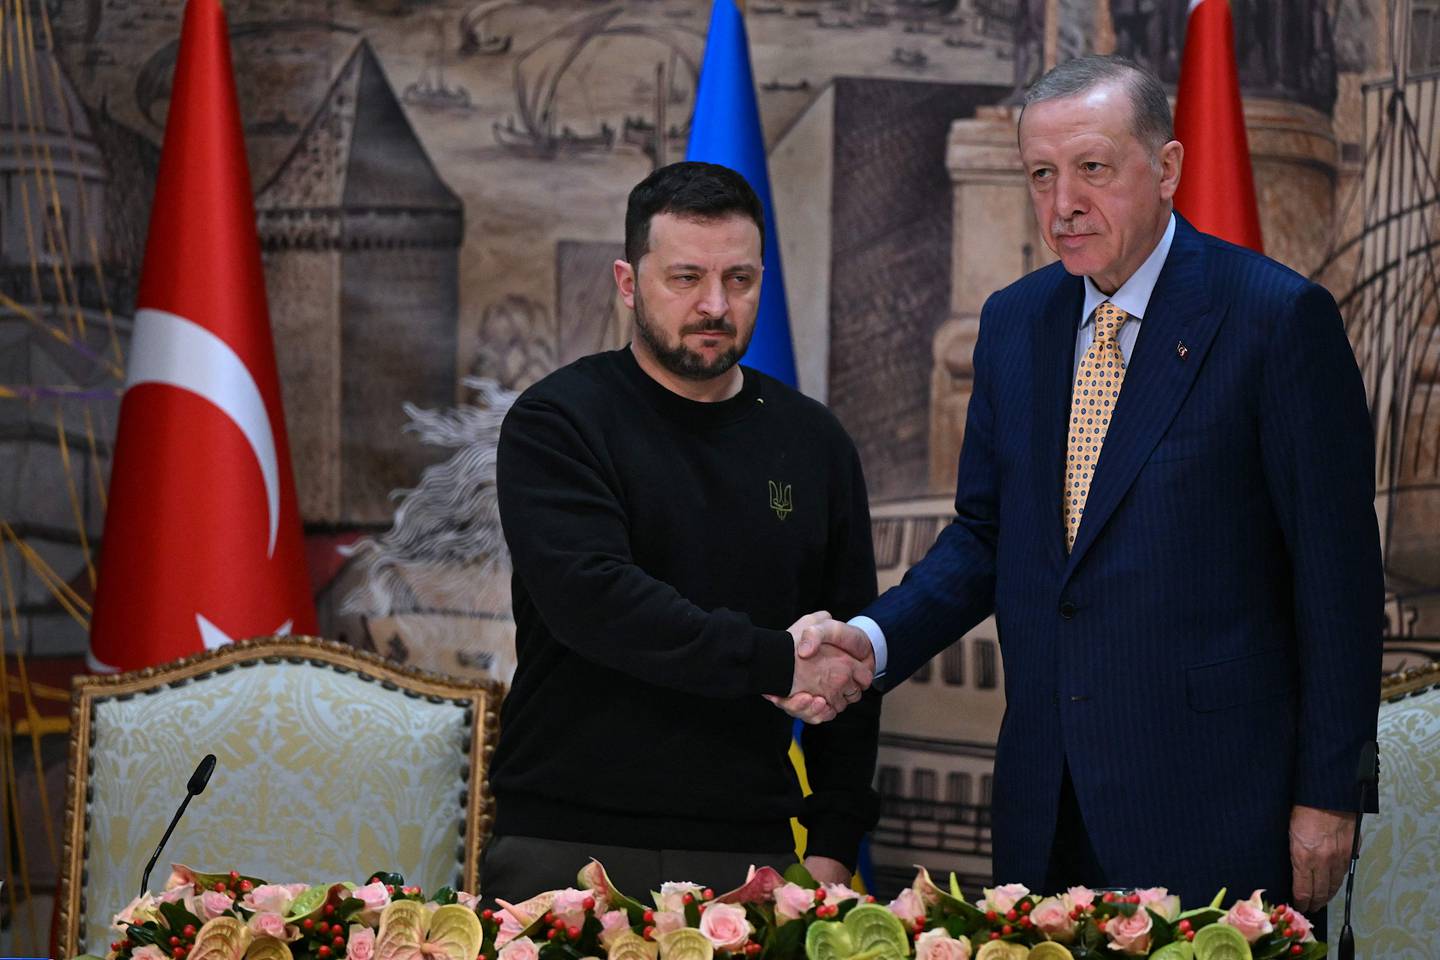 El presidente de Turquía, Recep Tayyip Erdogan (derecha), estrecha la mano de Volodymir Zelenski (izquierda) después de una conferencia en Estambul este viernes.